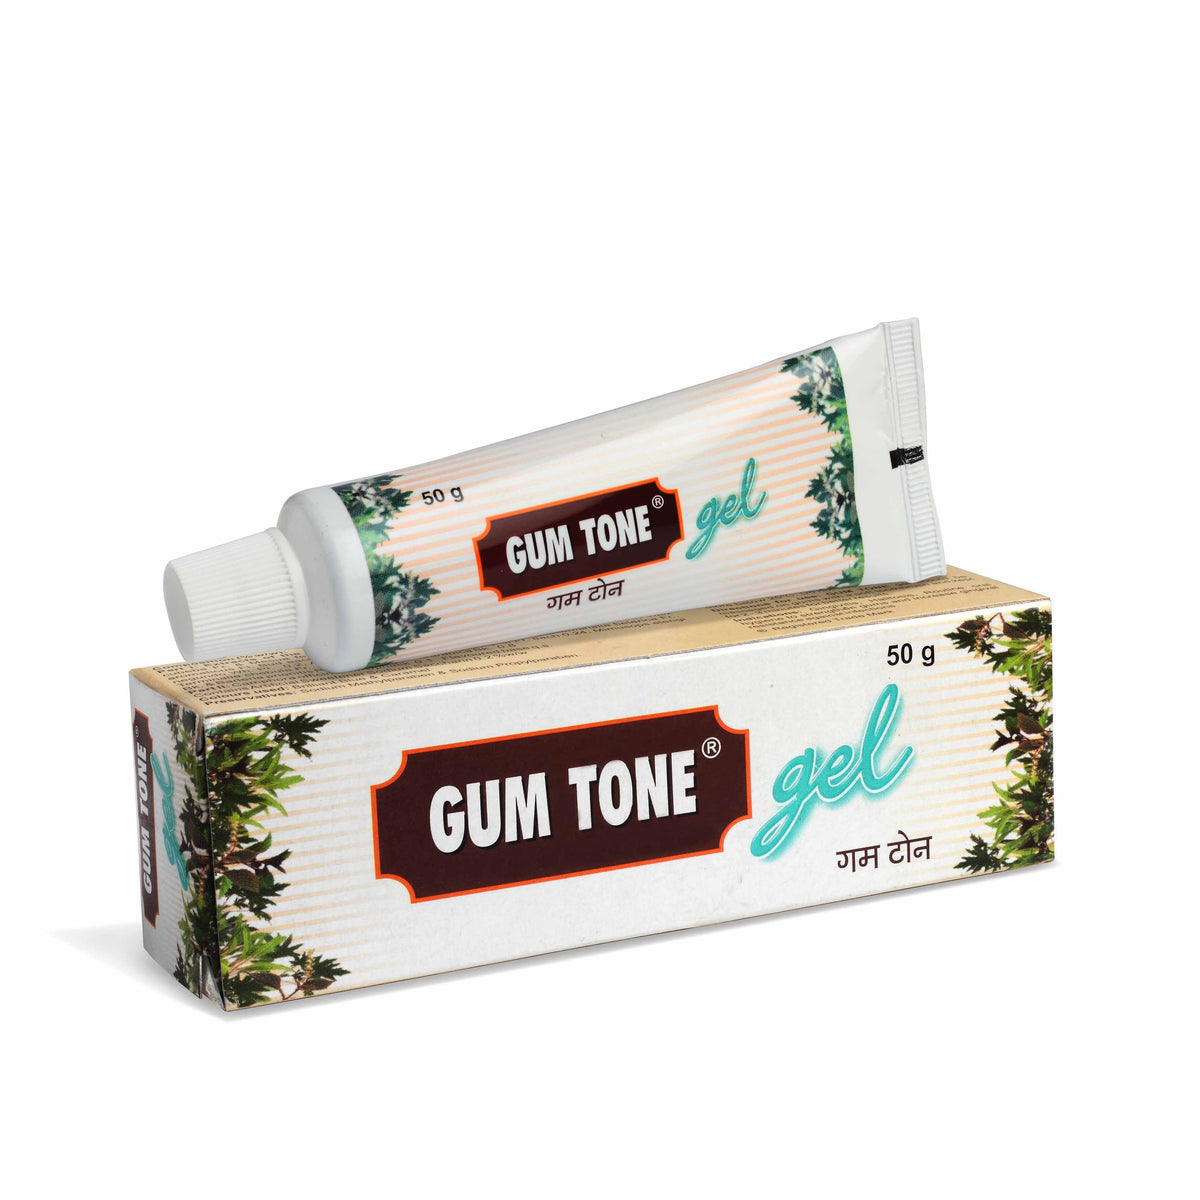 Gum Tone gel